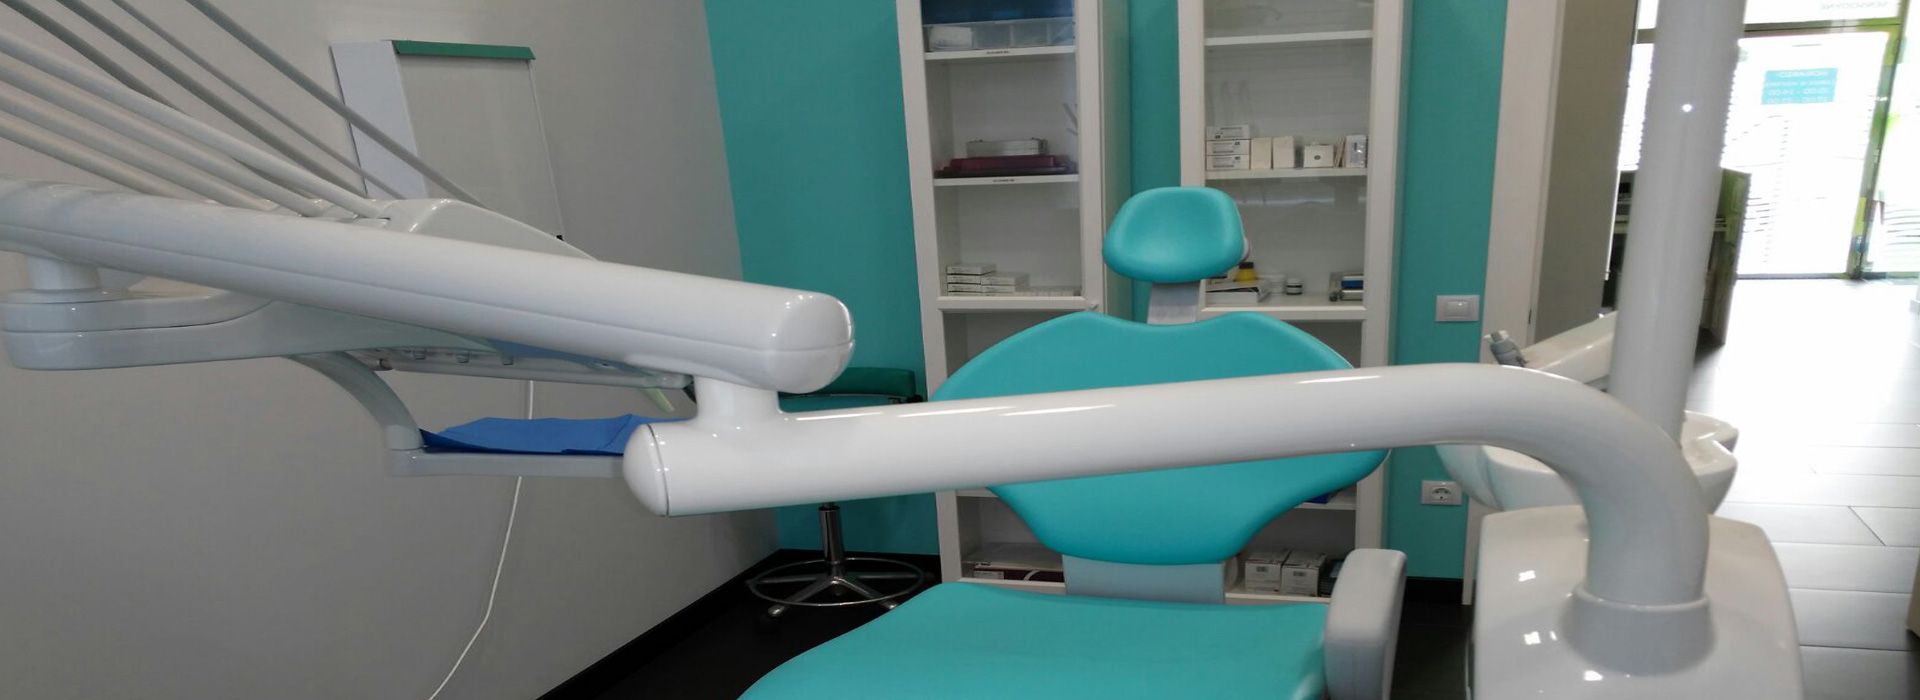 Dentista Aviles, clinica dental asturias, estetica dental